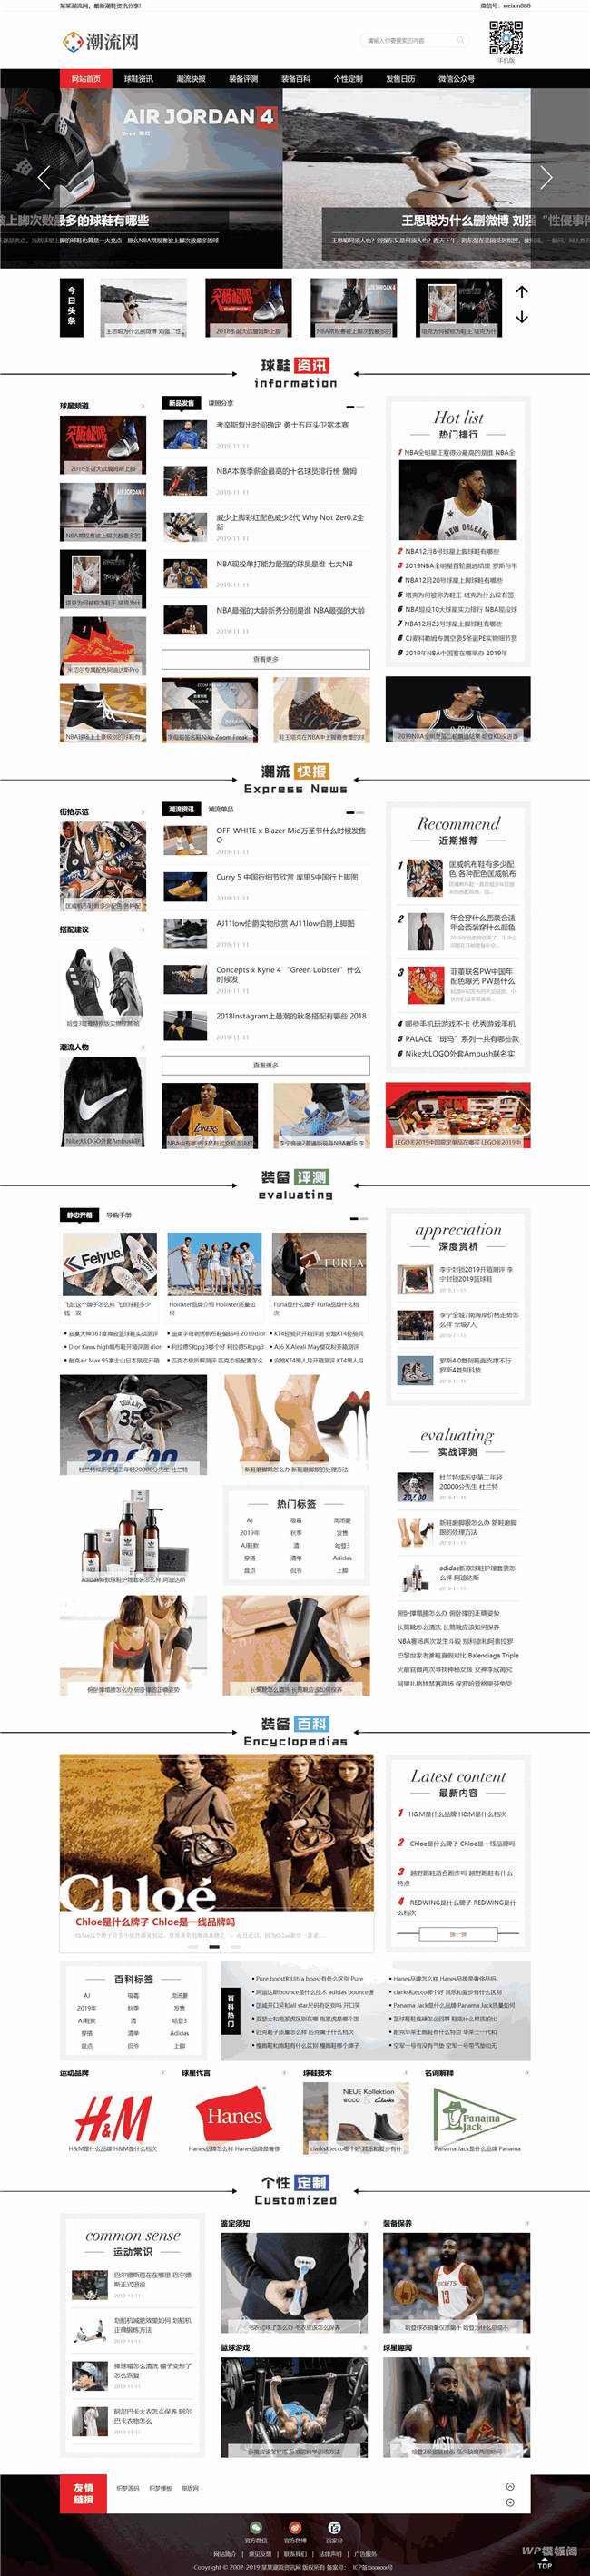 潮牌鞋潮流资讯WordPress网站主题模板演示图